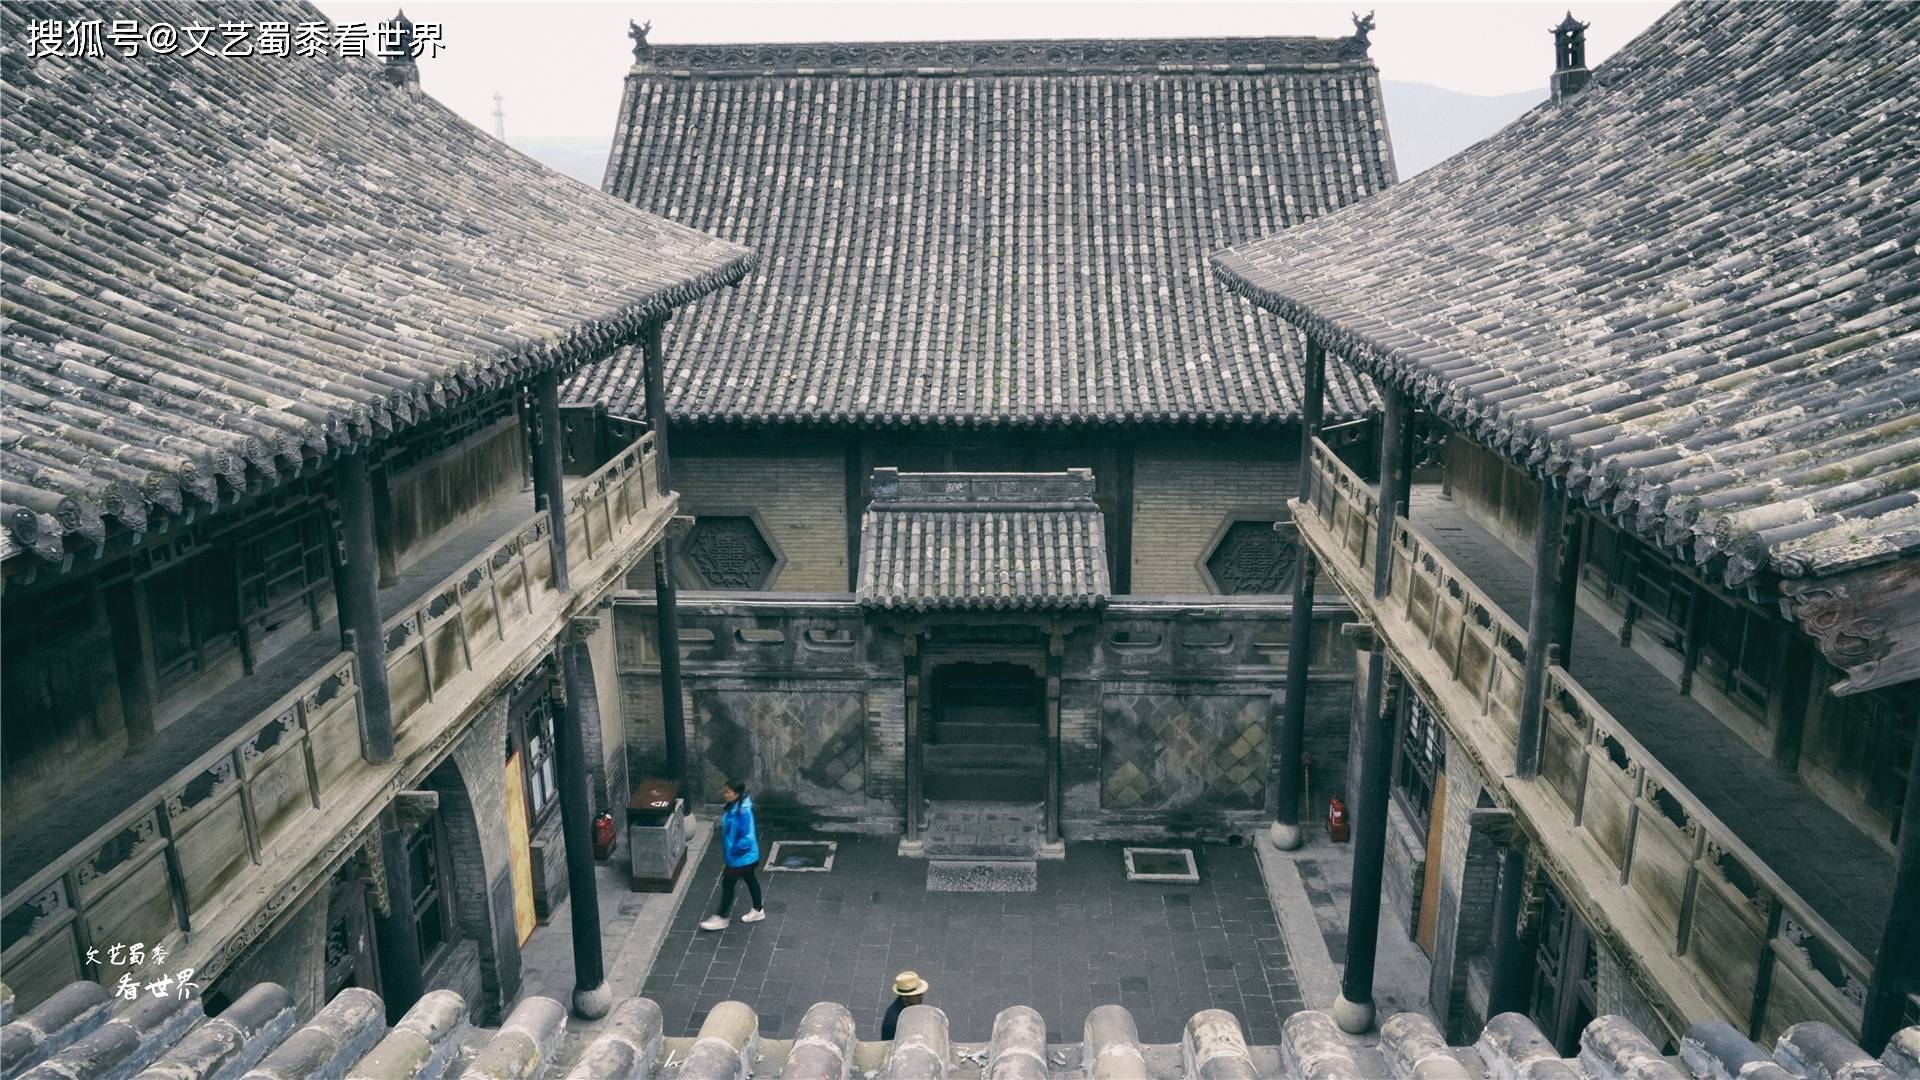 中国最大的私家豪宅,历经300年才建成,主人竟然是卖豆腐起家